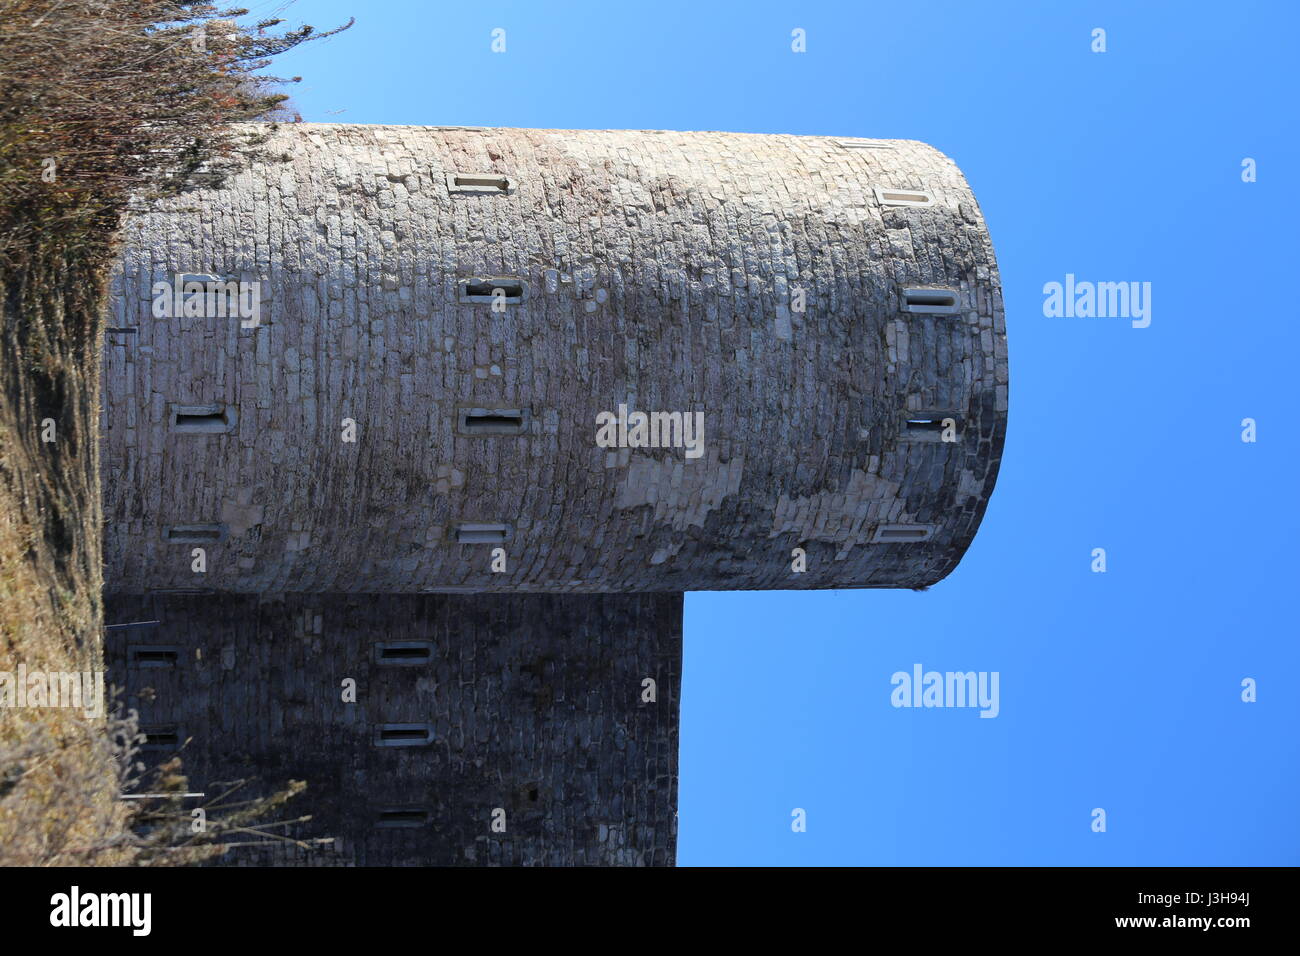 Torre di avvistamento di un antica rocca utilizzata dai soldati durante la Prima Guerra Mondiale nei pressi della città di Asiago in Italia settentrionale Foto Stock